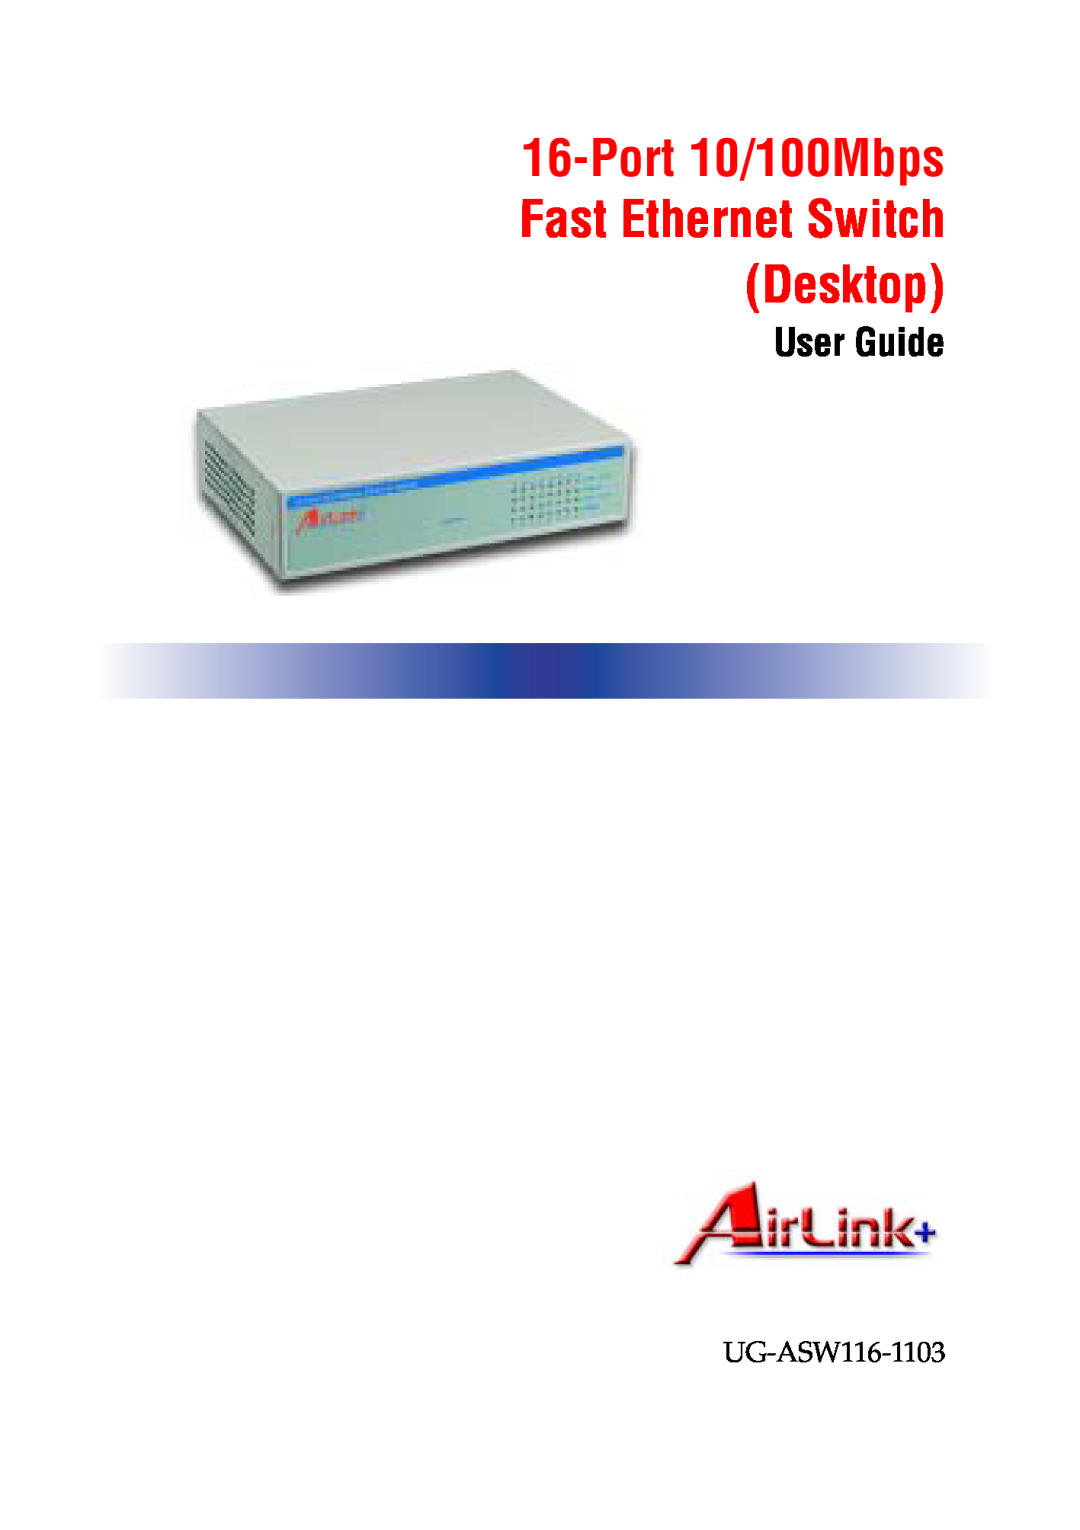 Airlink UG-ASW116-1103 manual Port 10/100Mbps Fast Ethernet Switch Desktop, User Guide, AirLink+ 